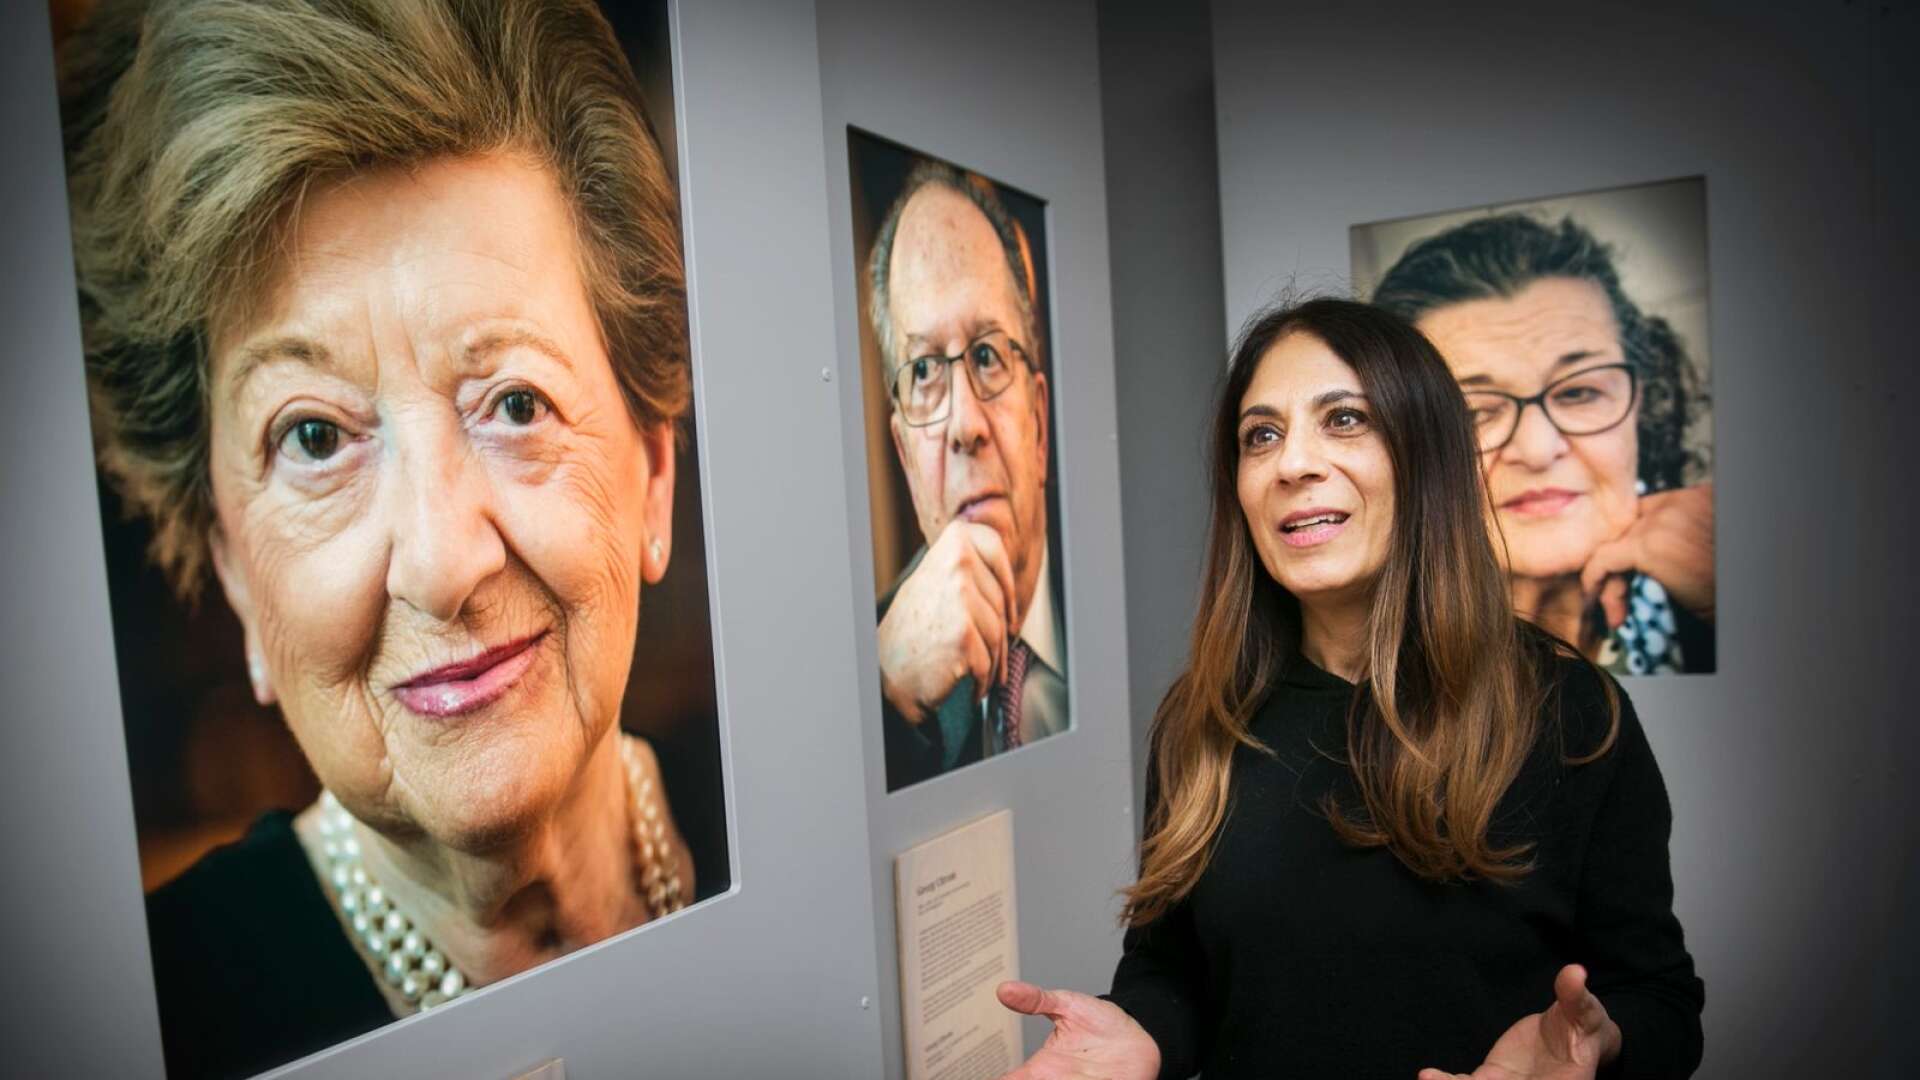 Lizzie Scheja, chef för oranisationen Judisk Kultur, är en av dem som arbetat fram utställningen, som nu finns på Värmlands Museum, den första utställningsplatsen efter Historiska museet i Stockholm.